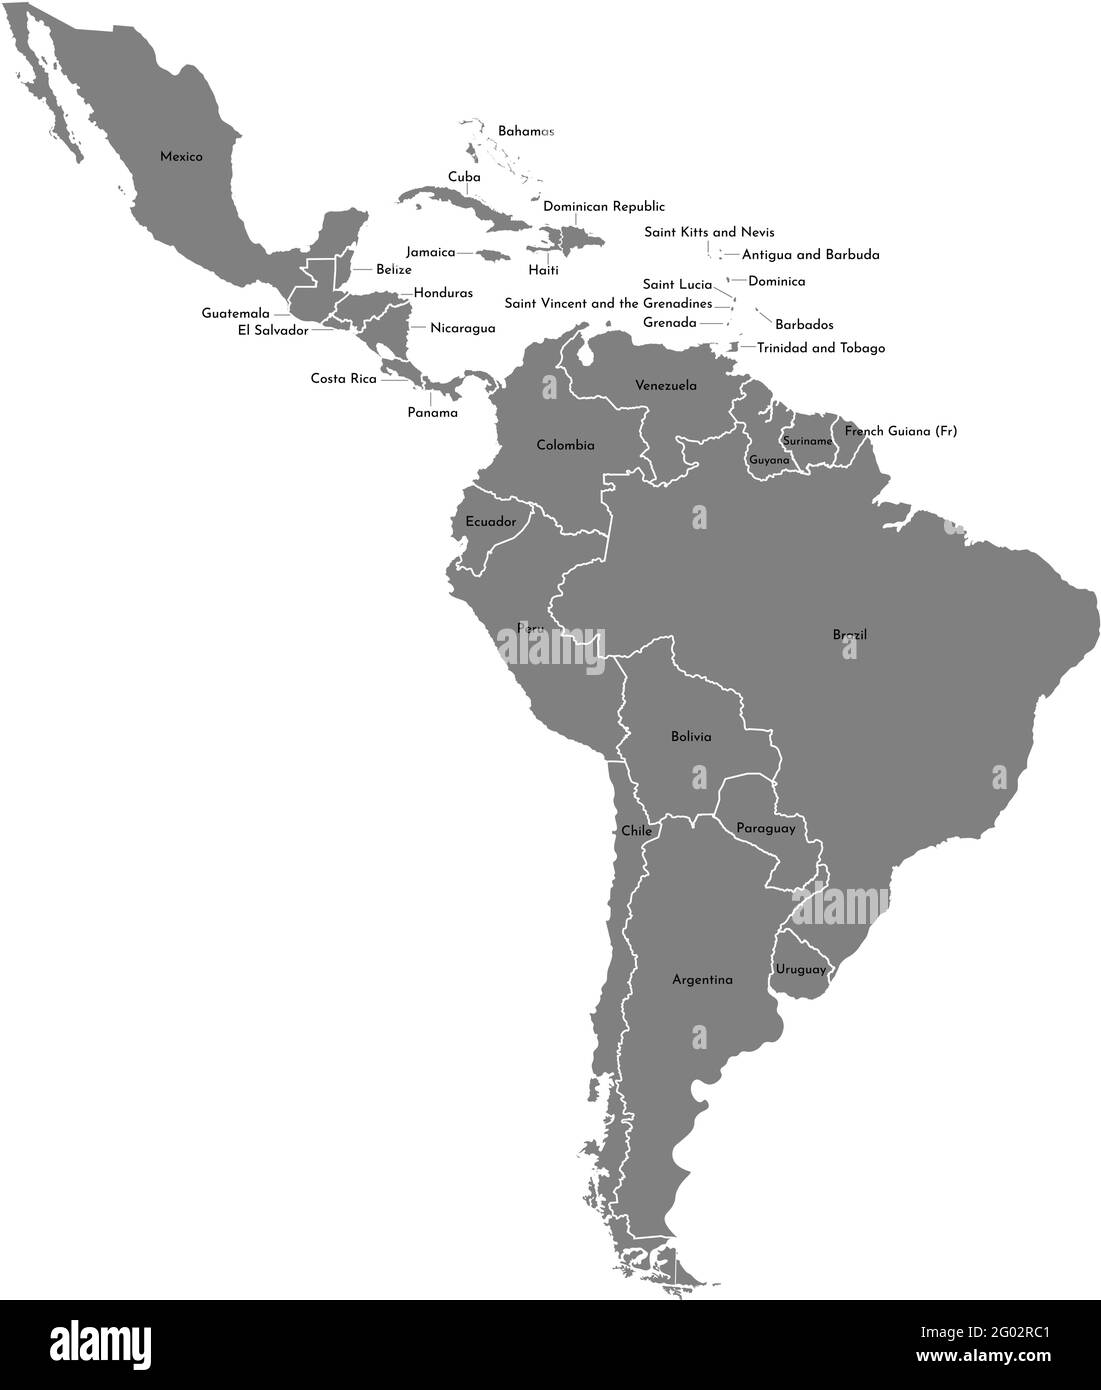 Vektor-Illustration mit Karte des Südamerikakontinents und eines Teils von Mittelamerika. Graue Silhouetten, weißgrauer Hintergrund. Stock Vektor